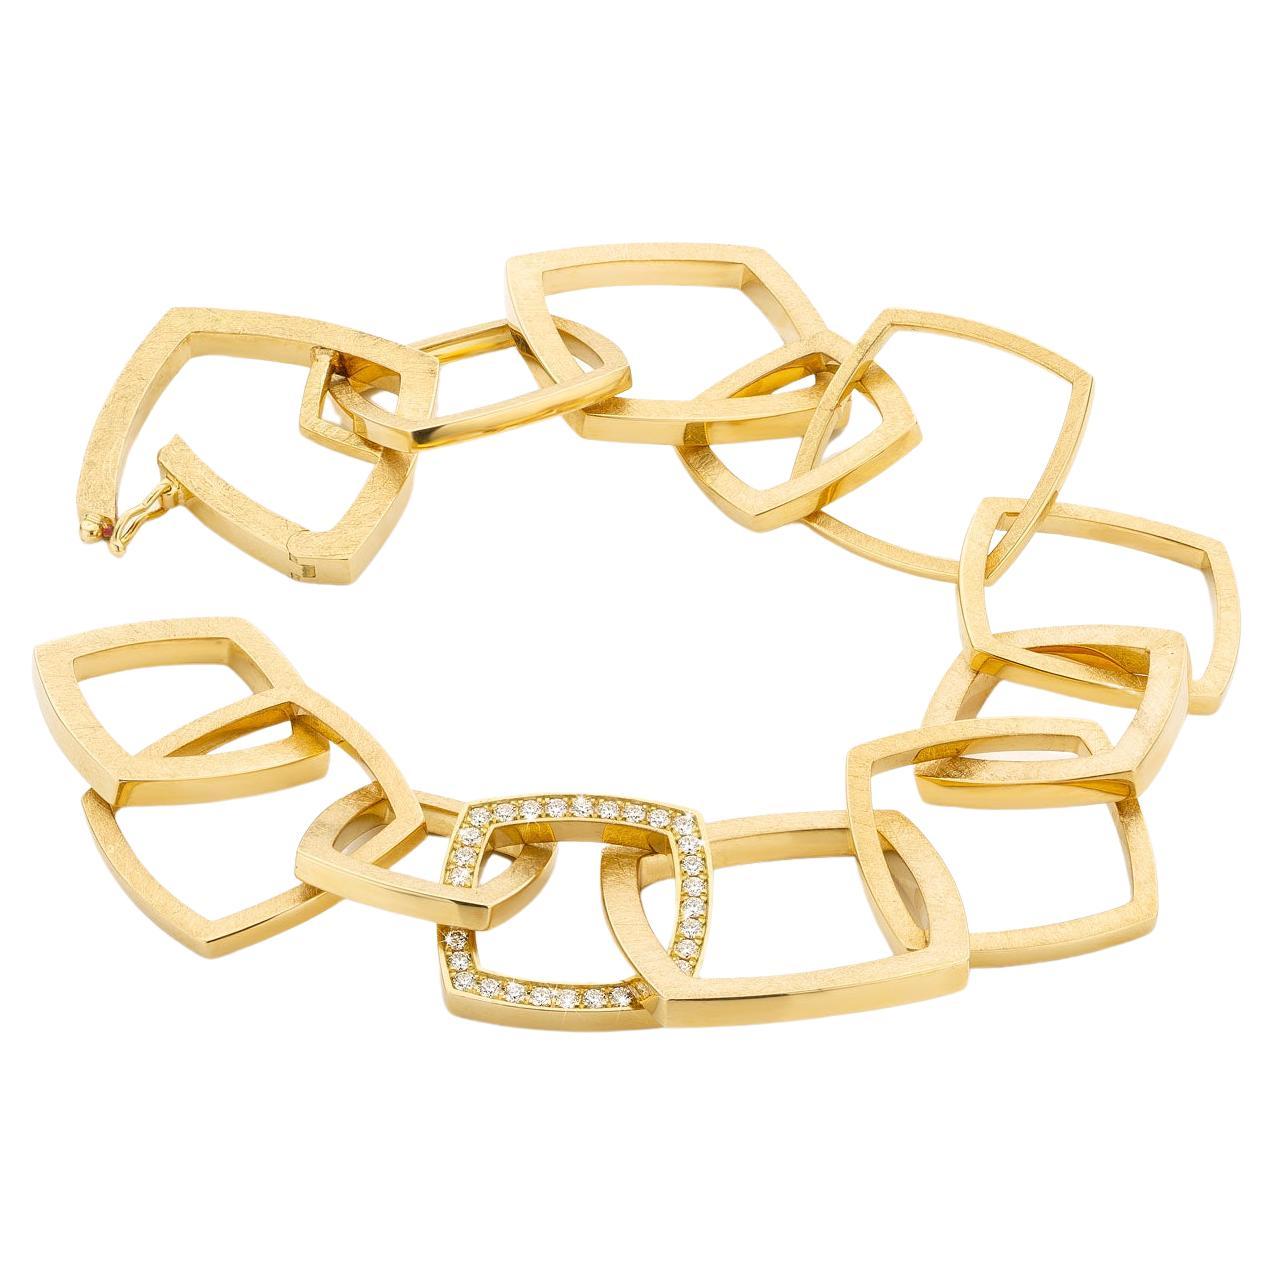 Cober square links & 36 brilliant cut Diamonds Yellow Gold Bracelet For Sale